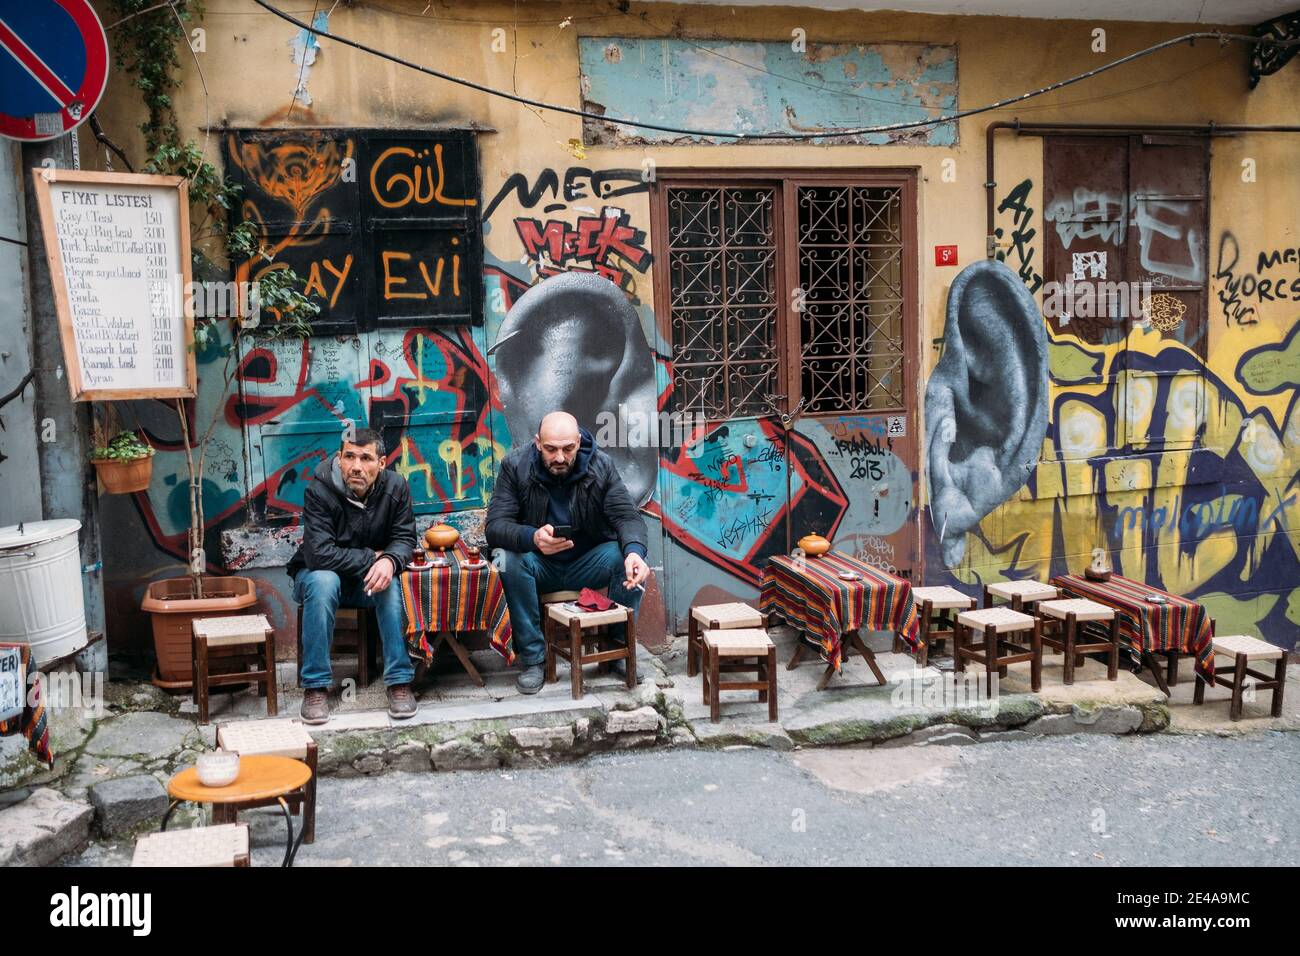 TURQUÍA, ESTAMBUL, 14 DE DICIEMBRE de 2018: Los hombres se relajan en una casa de té tradicional turca en la calle. Foto de stock